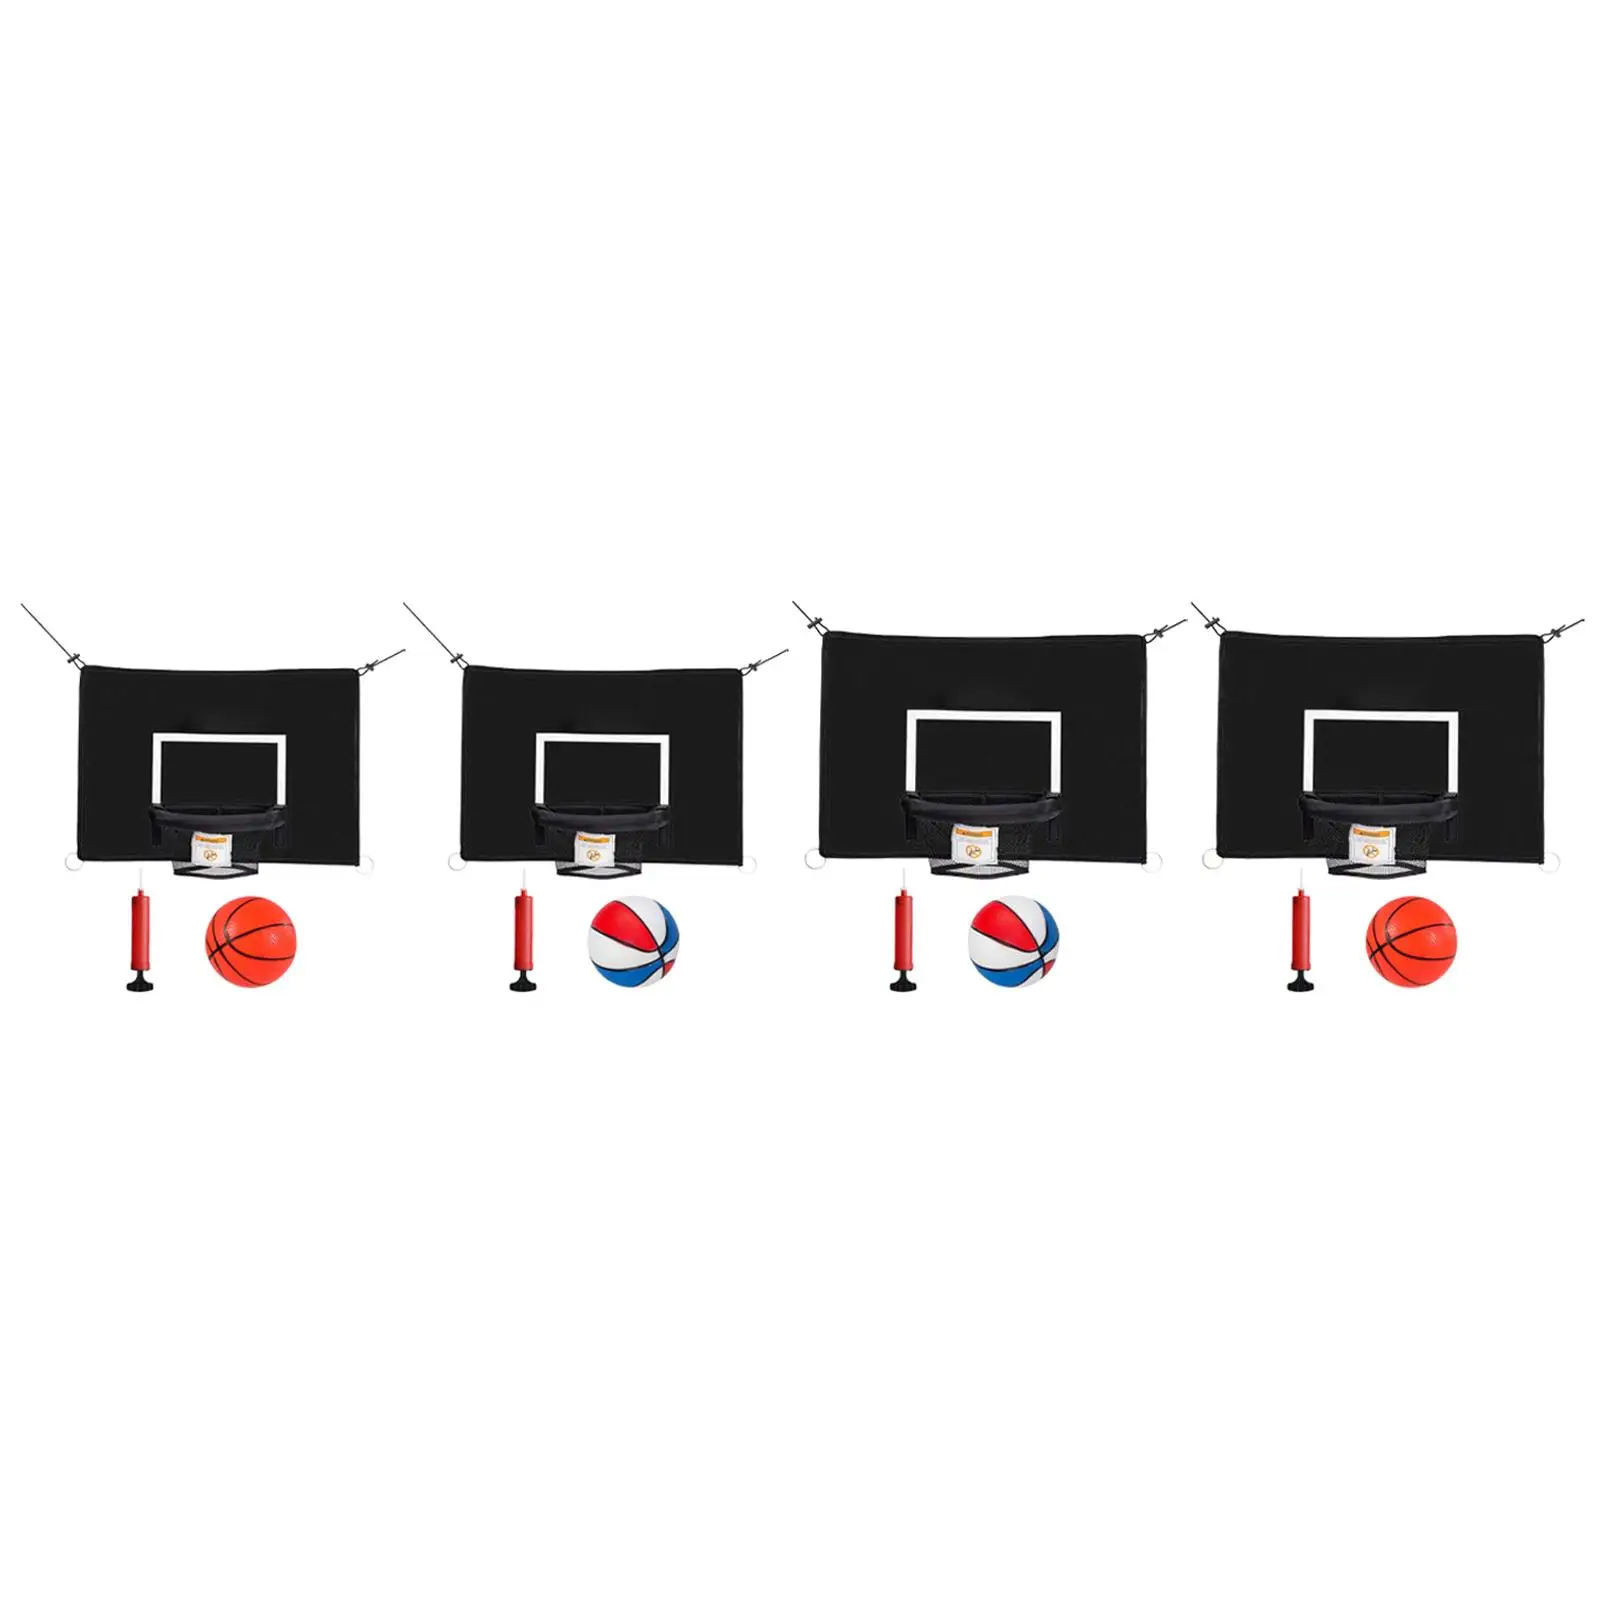 Mini Trambolin basketbol potası Erkek Kız Bağlantı Halatları ile Top Pompası ile Su Geçirmez kurulumu kolay basketbol çerçeve Görüntü 0